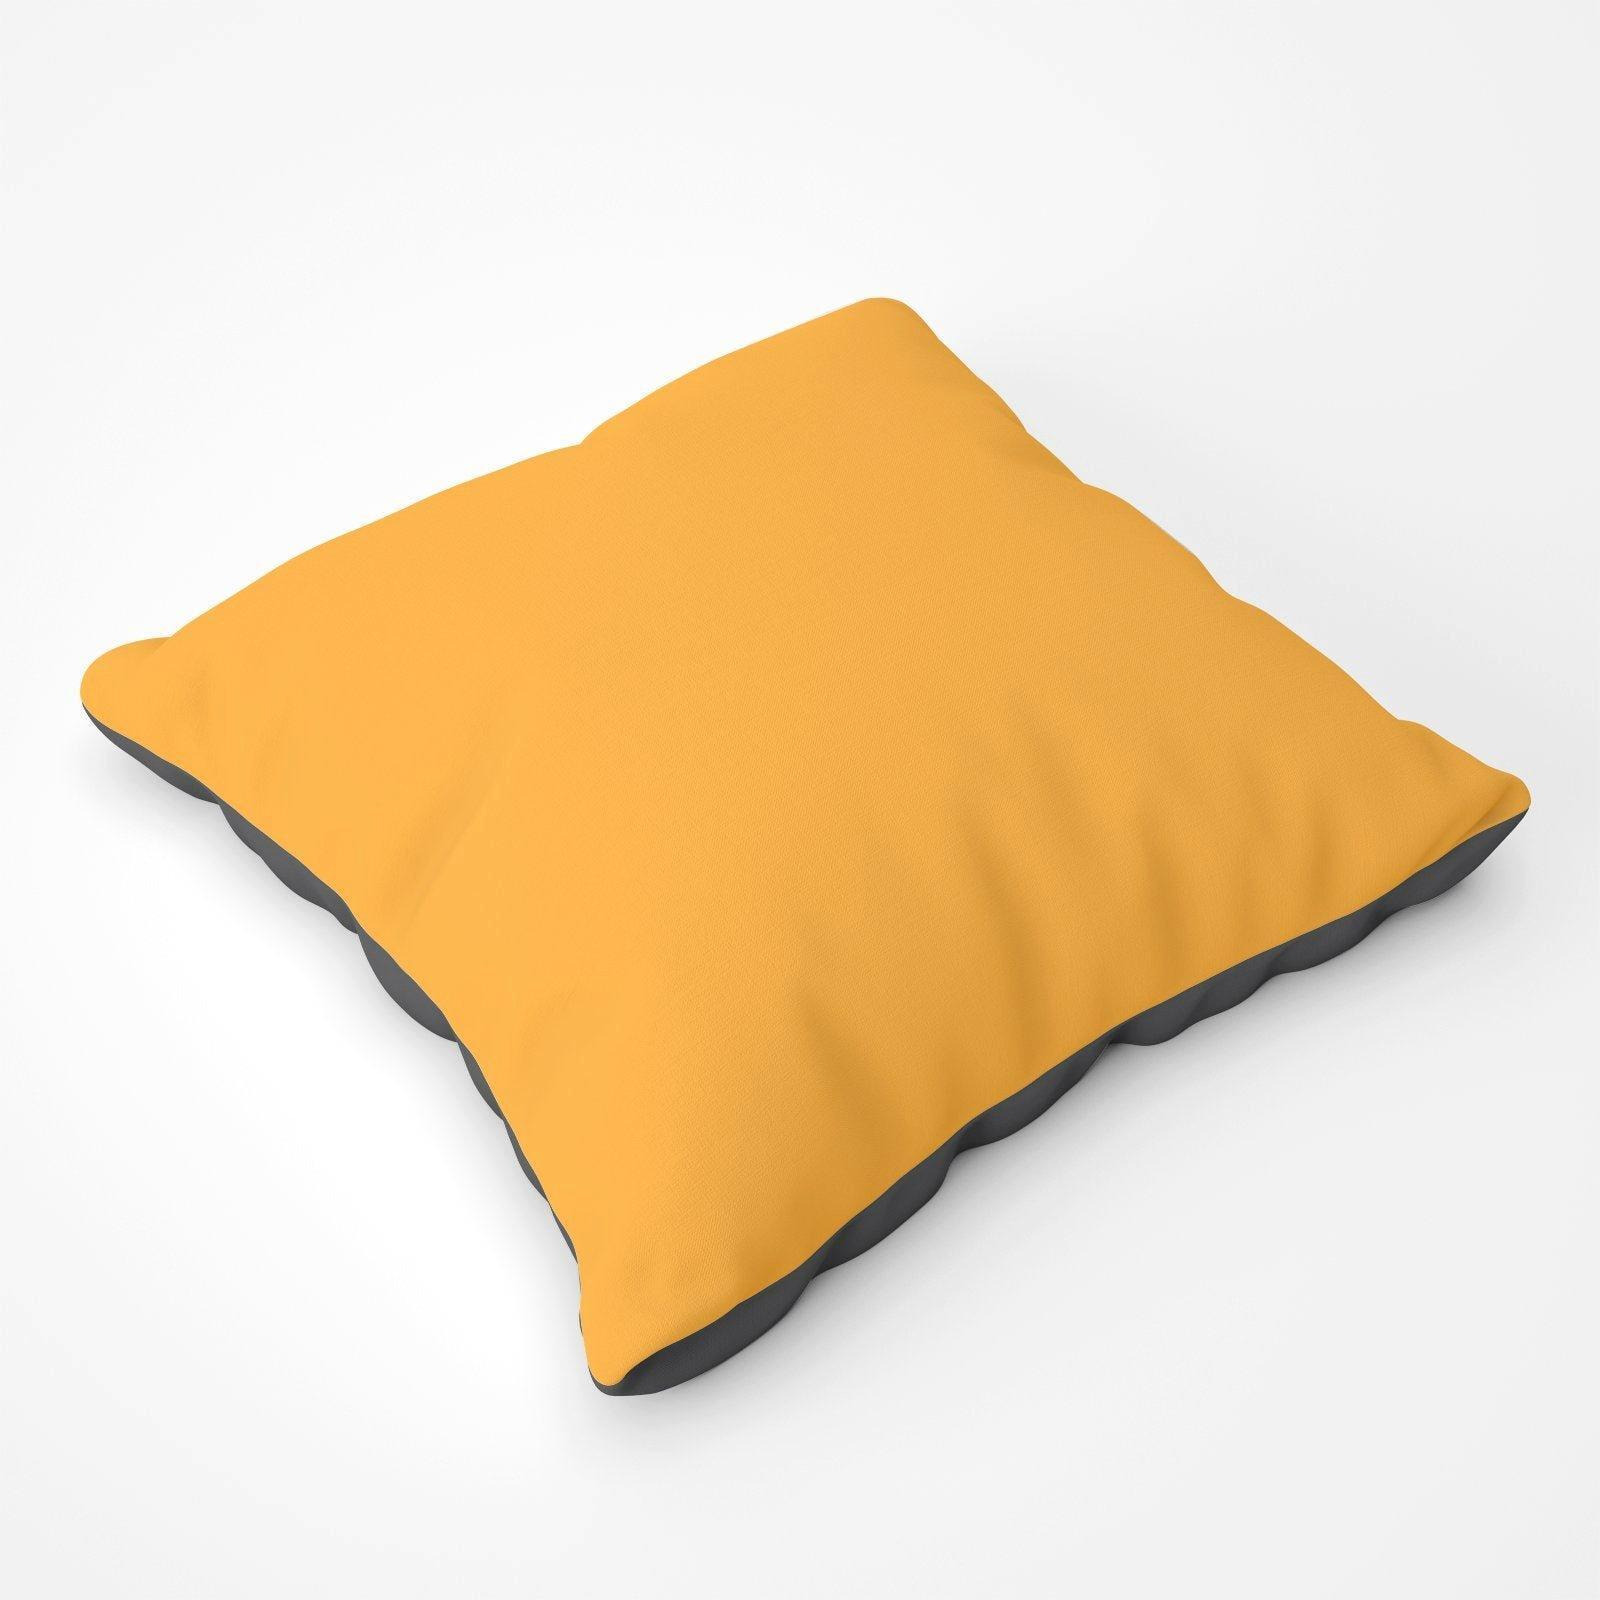 Cantaloupe Orange Floor Cushion - image 1